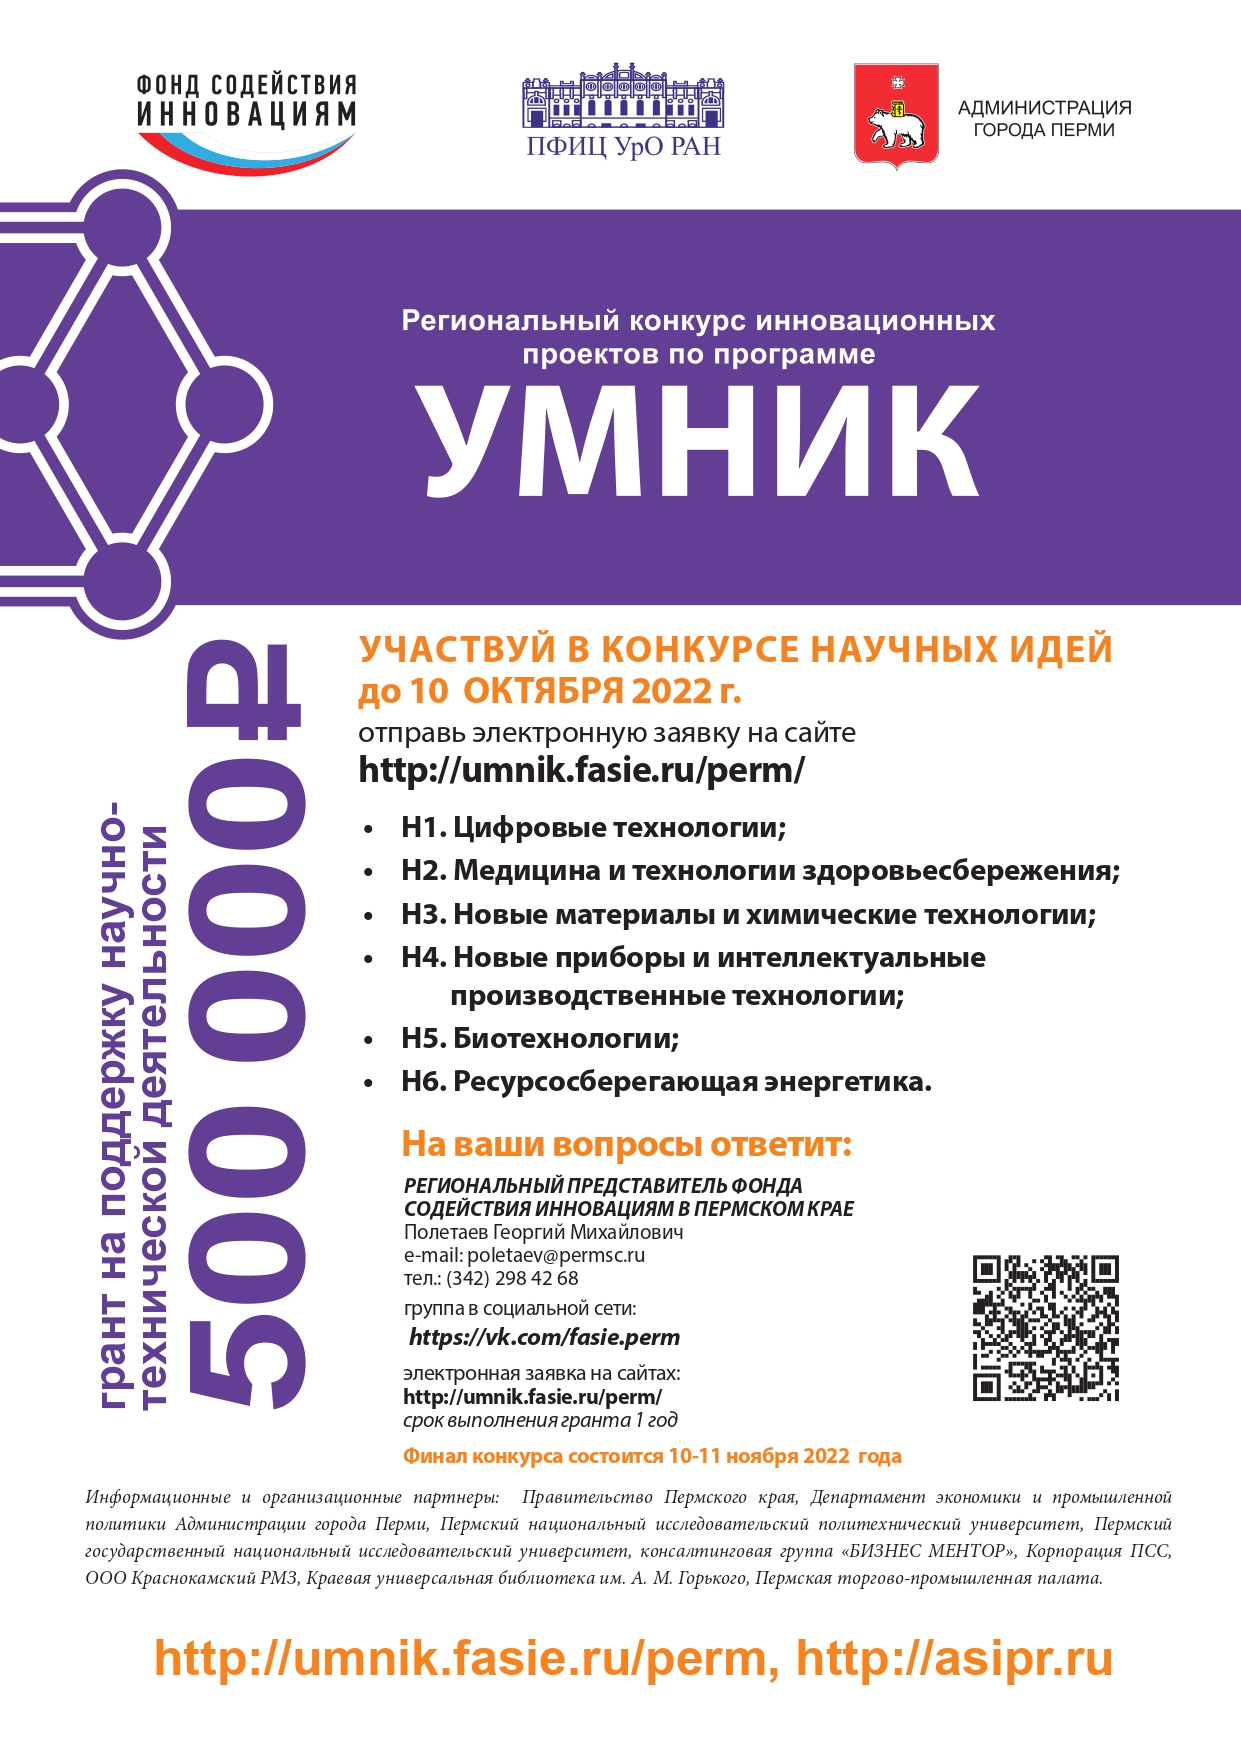 Плакат УМНИК 2022 край МСП page 0001